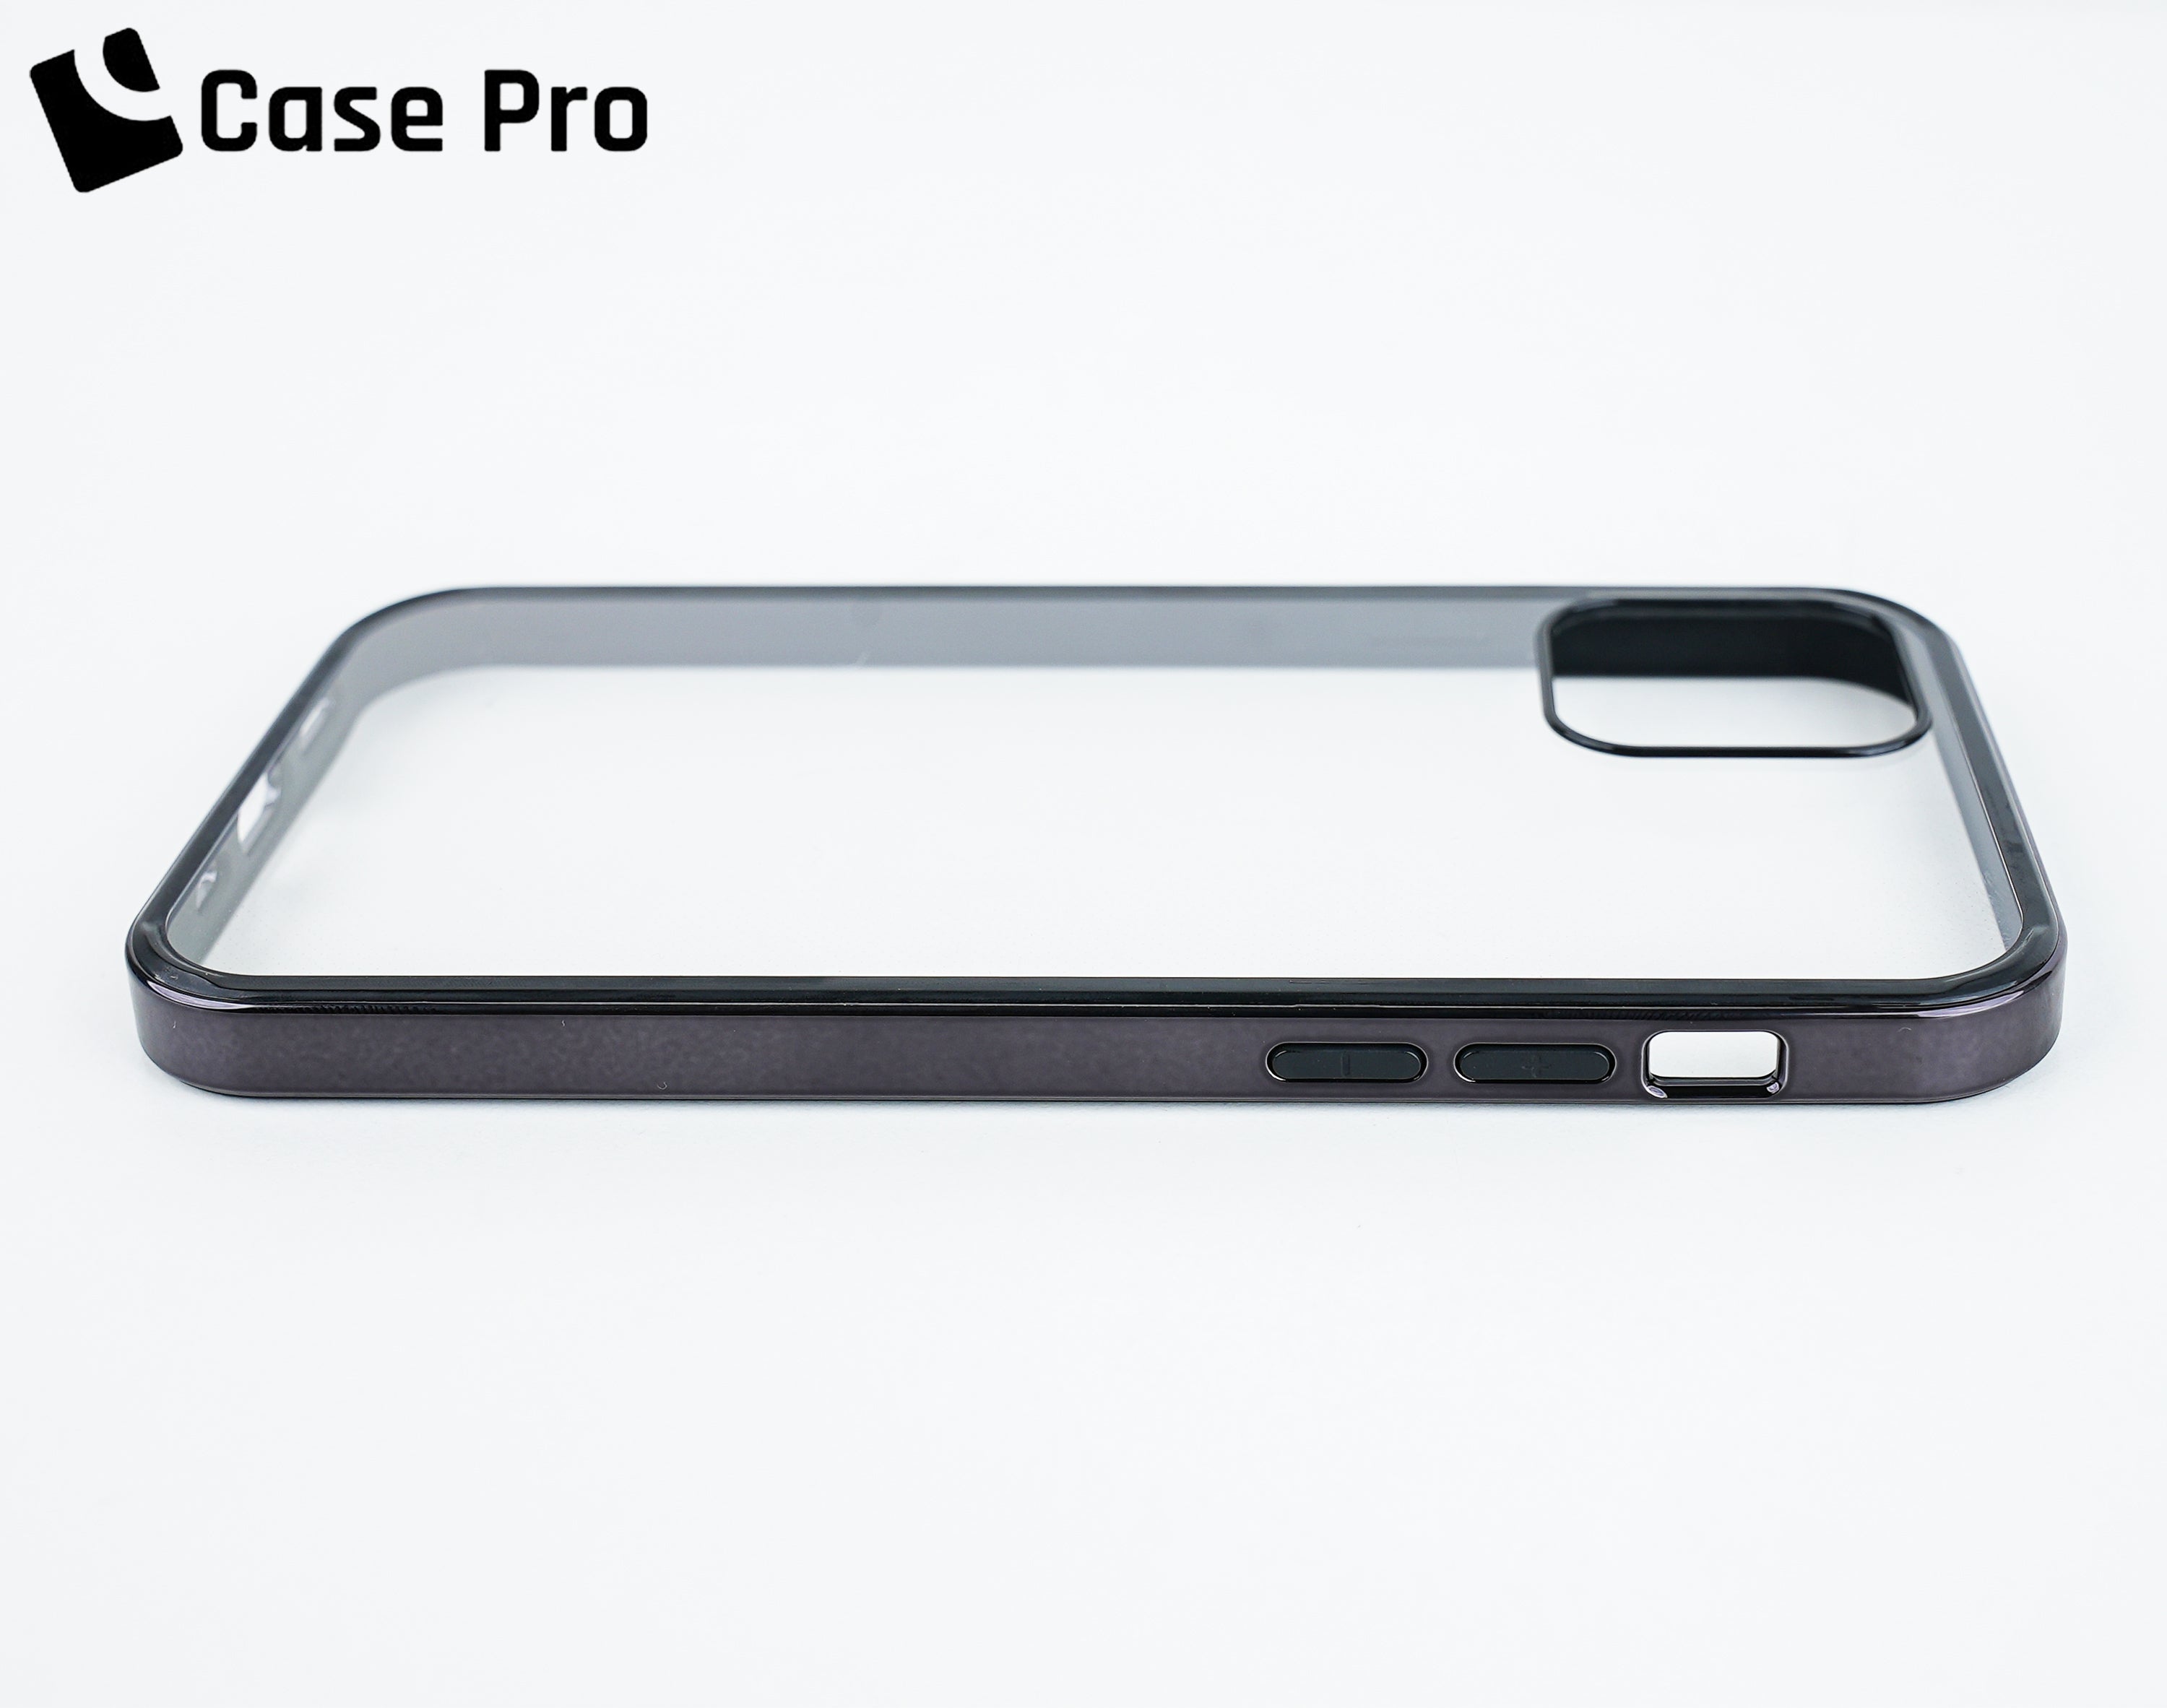 CASE PRO iPhone 13 Case (Steel Bumper)